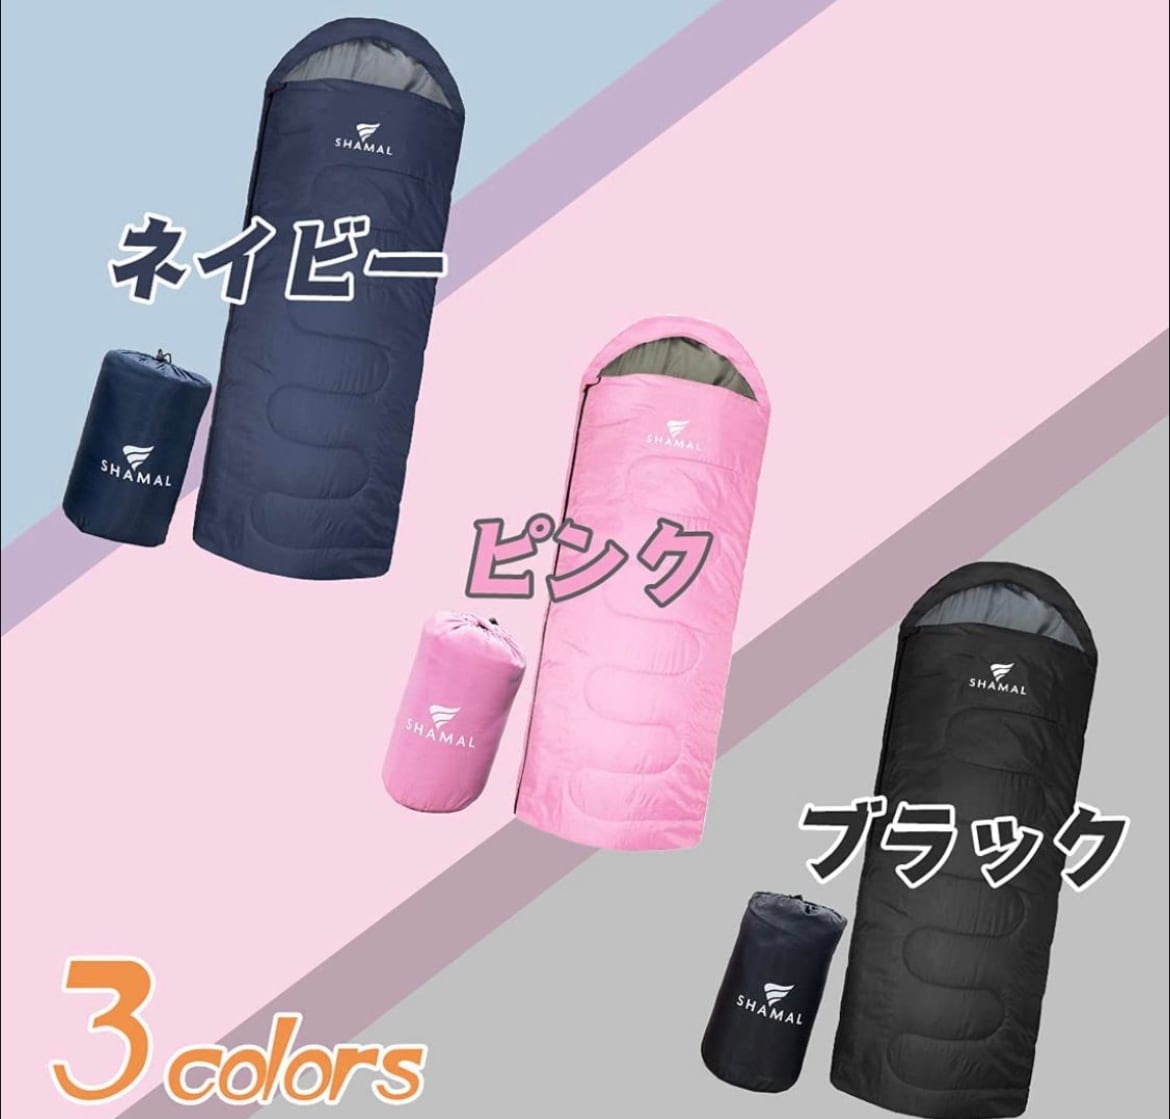 2個 高級素材 寝袋 シュラフ ワイドサイズ 枕付き 人工ダウン  -15℃対応封筒型